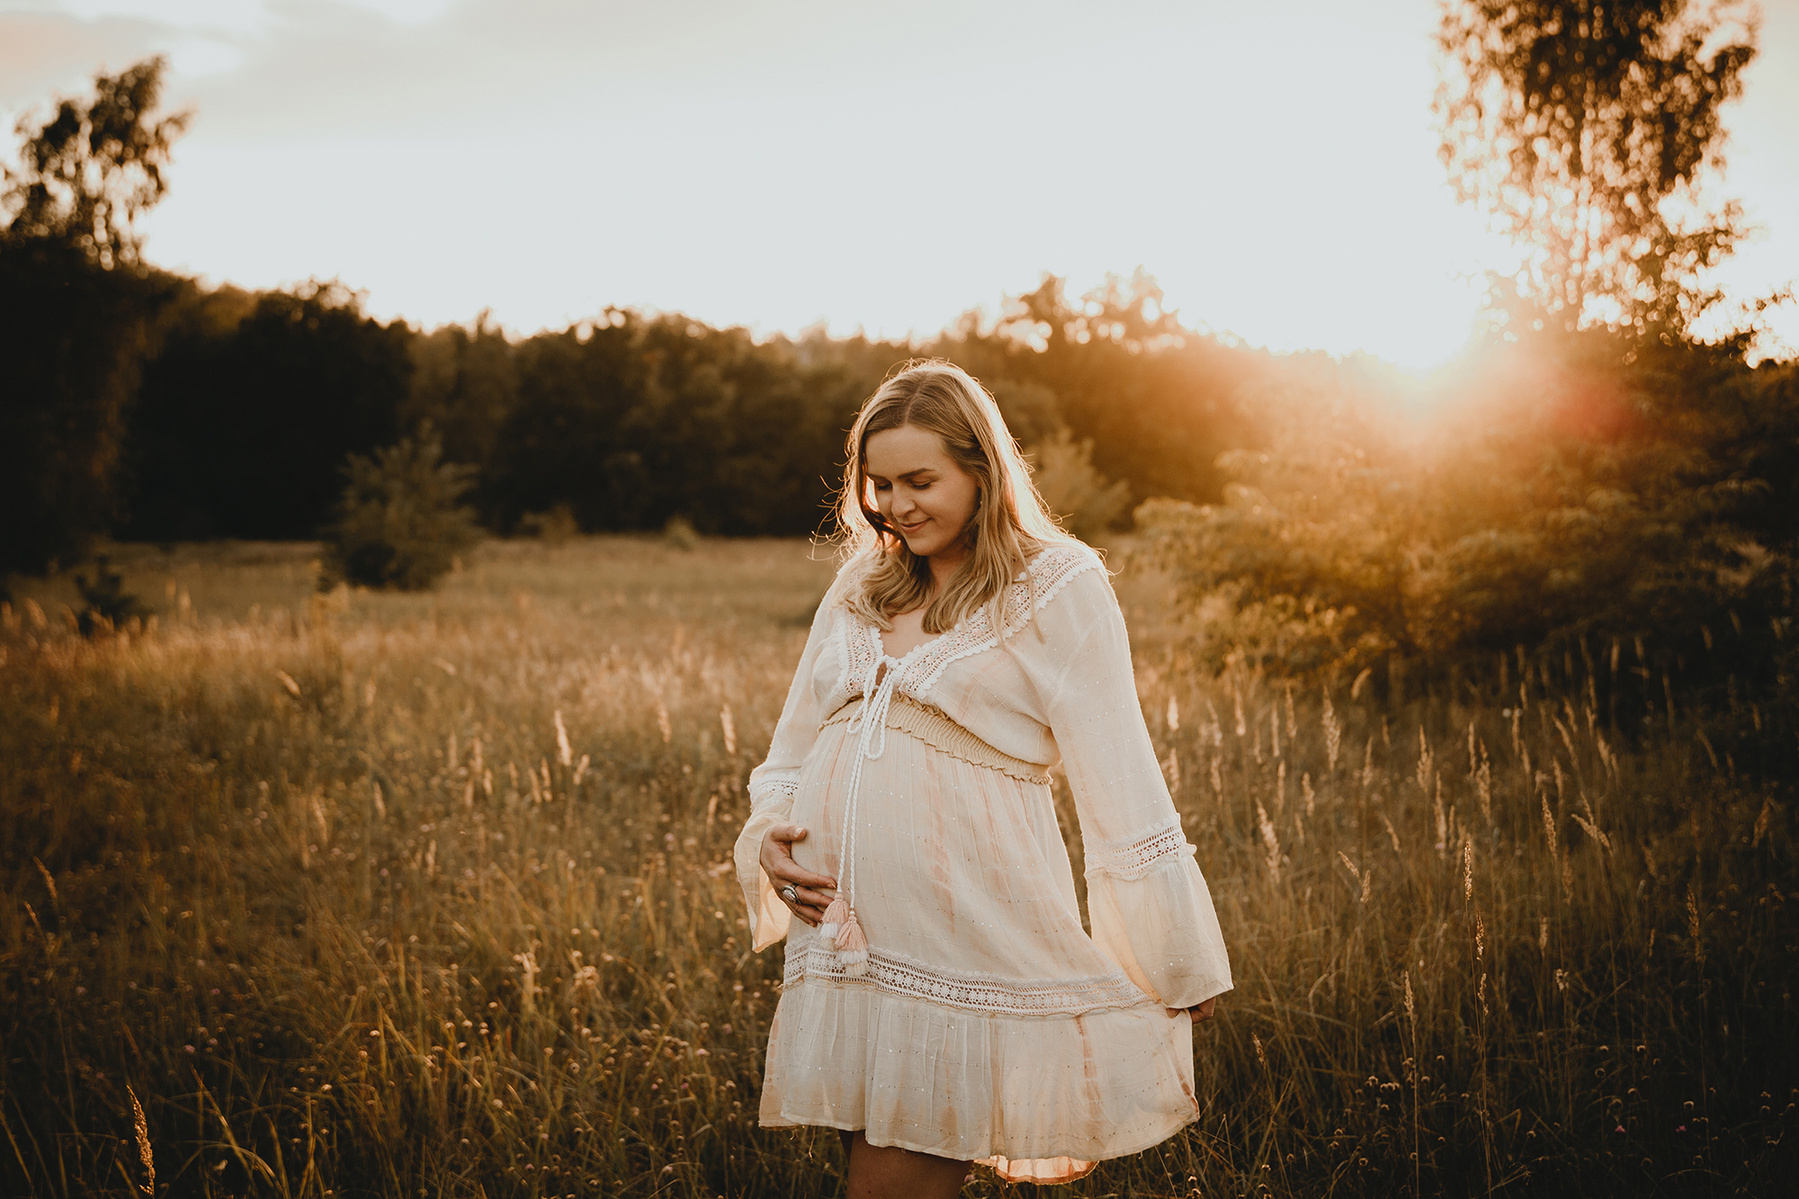 Nathalie genießt die besondere Zeit ihrer Schwangerschaft bei einem Babybauch Fotoshooting im Sonnenuntergang.